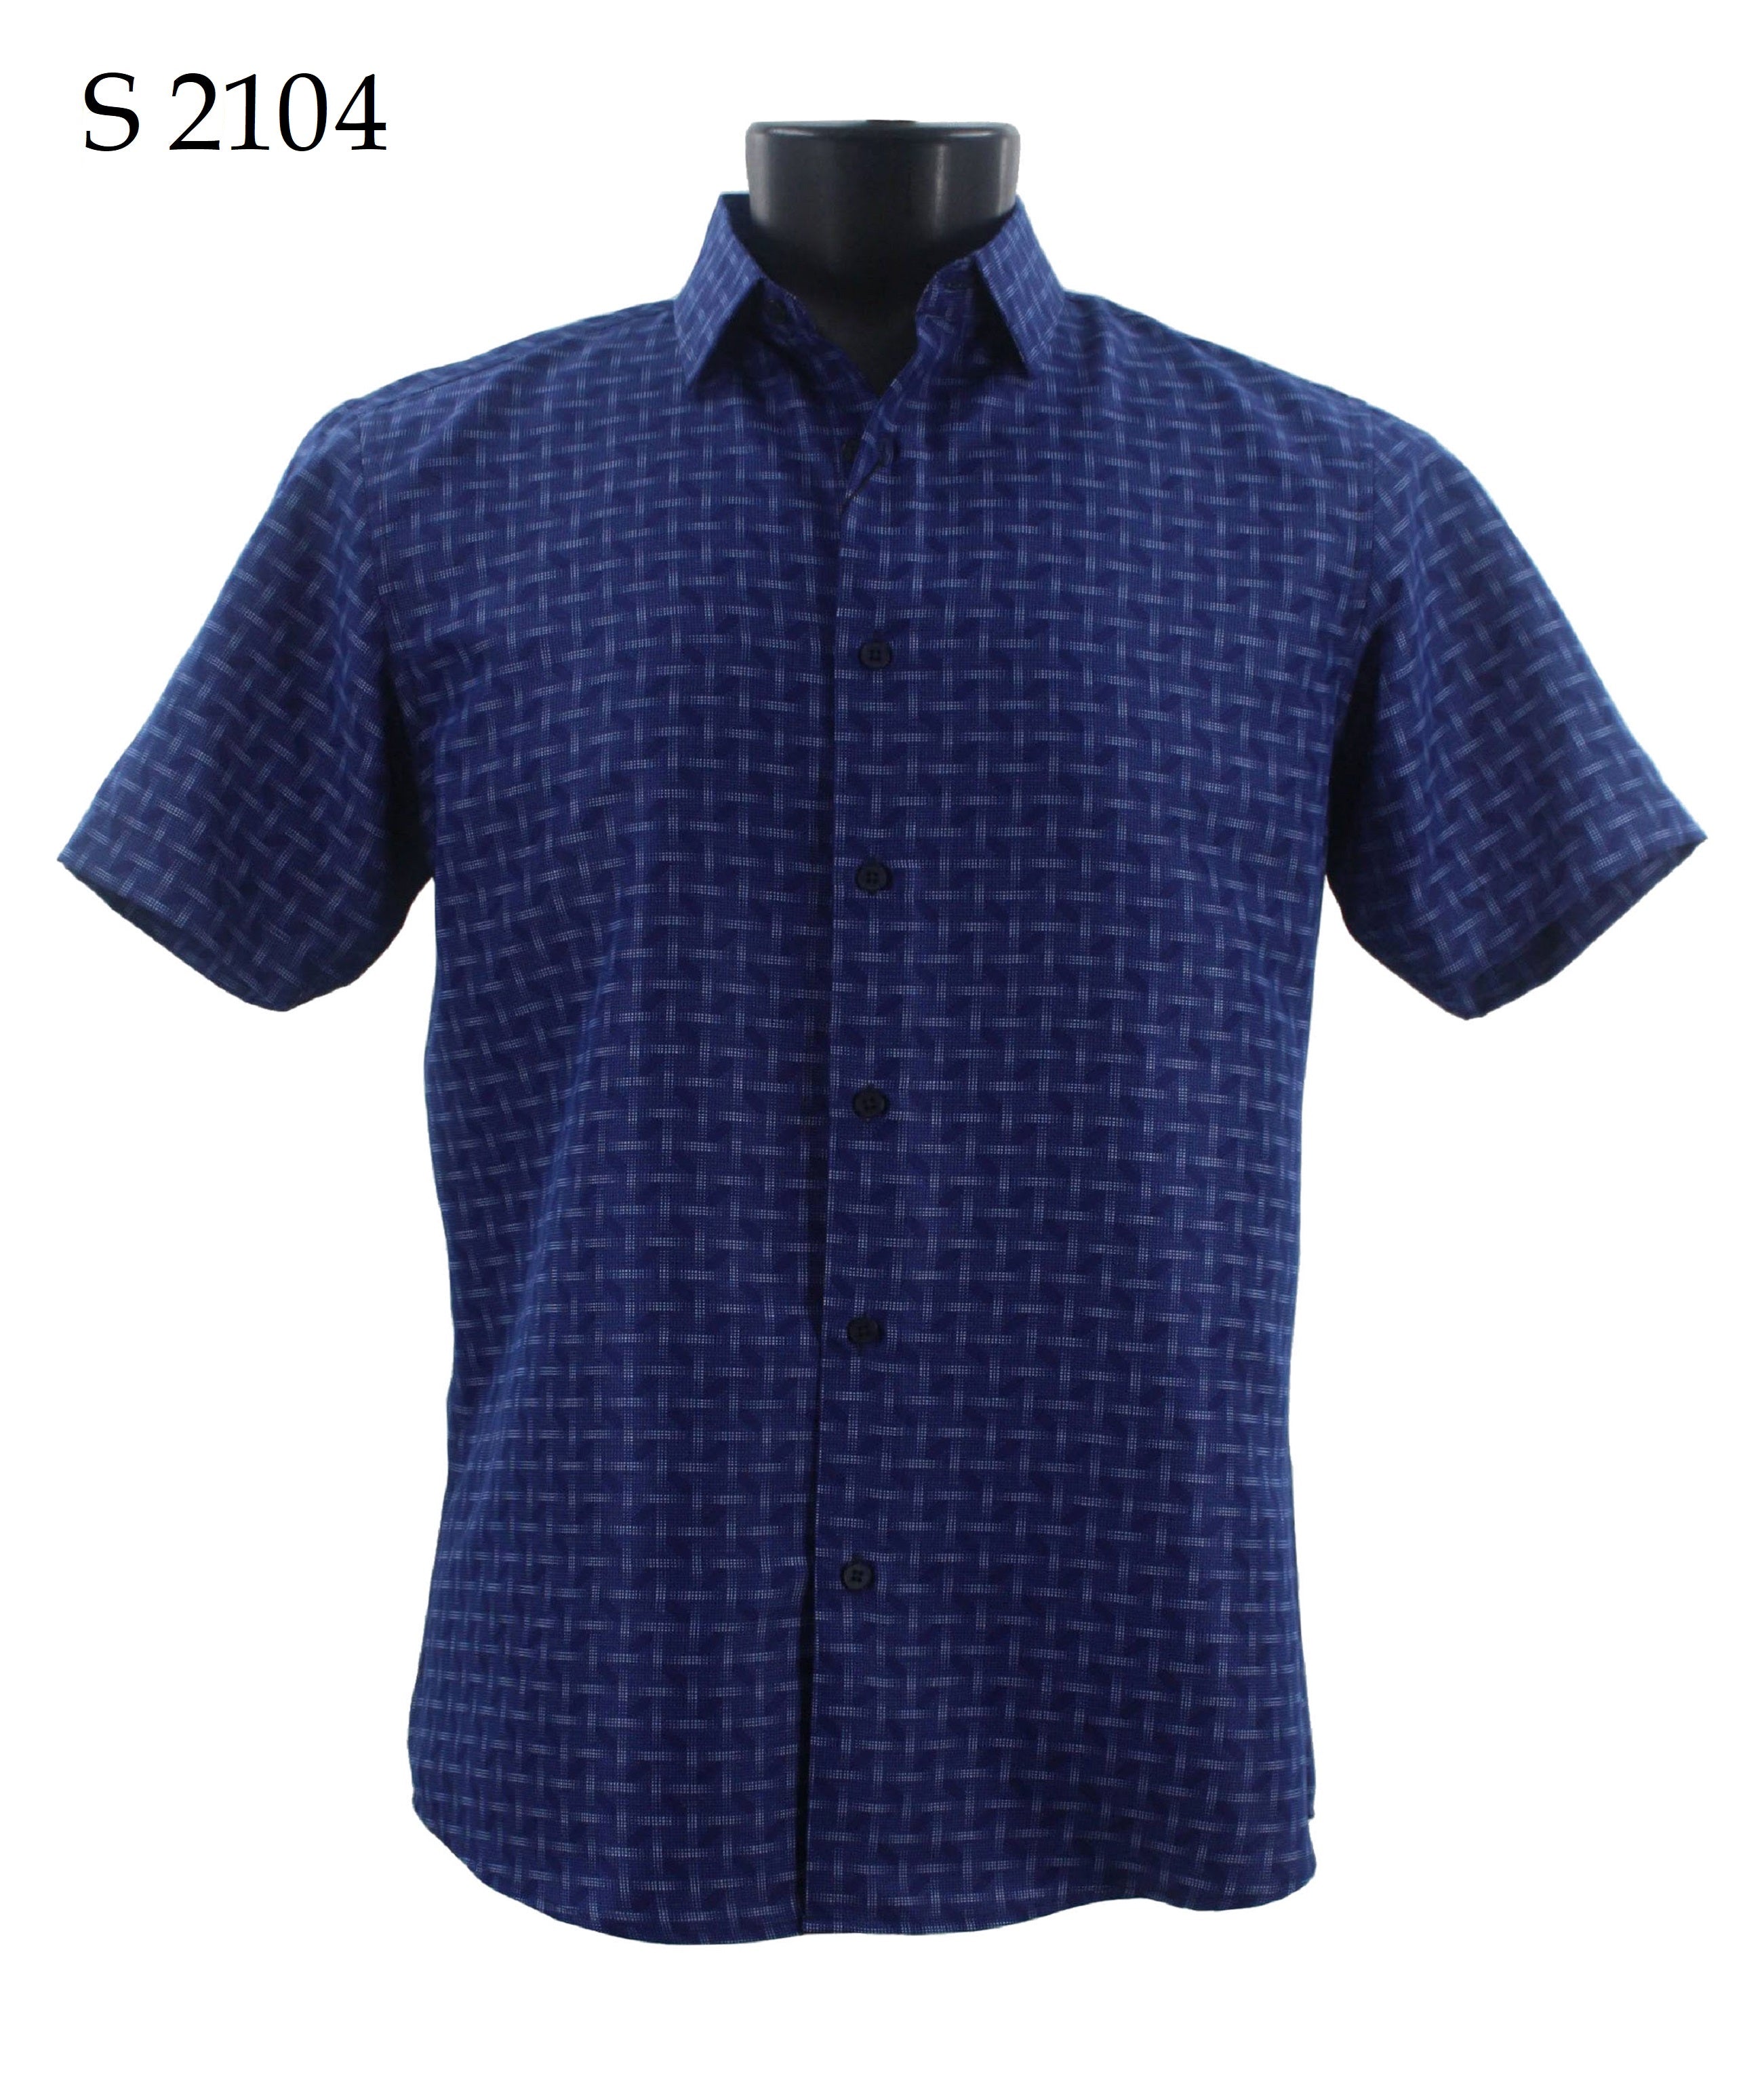 Sangi Short Sleeve Shirt S 2104